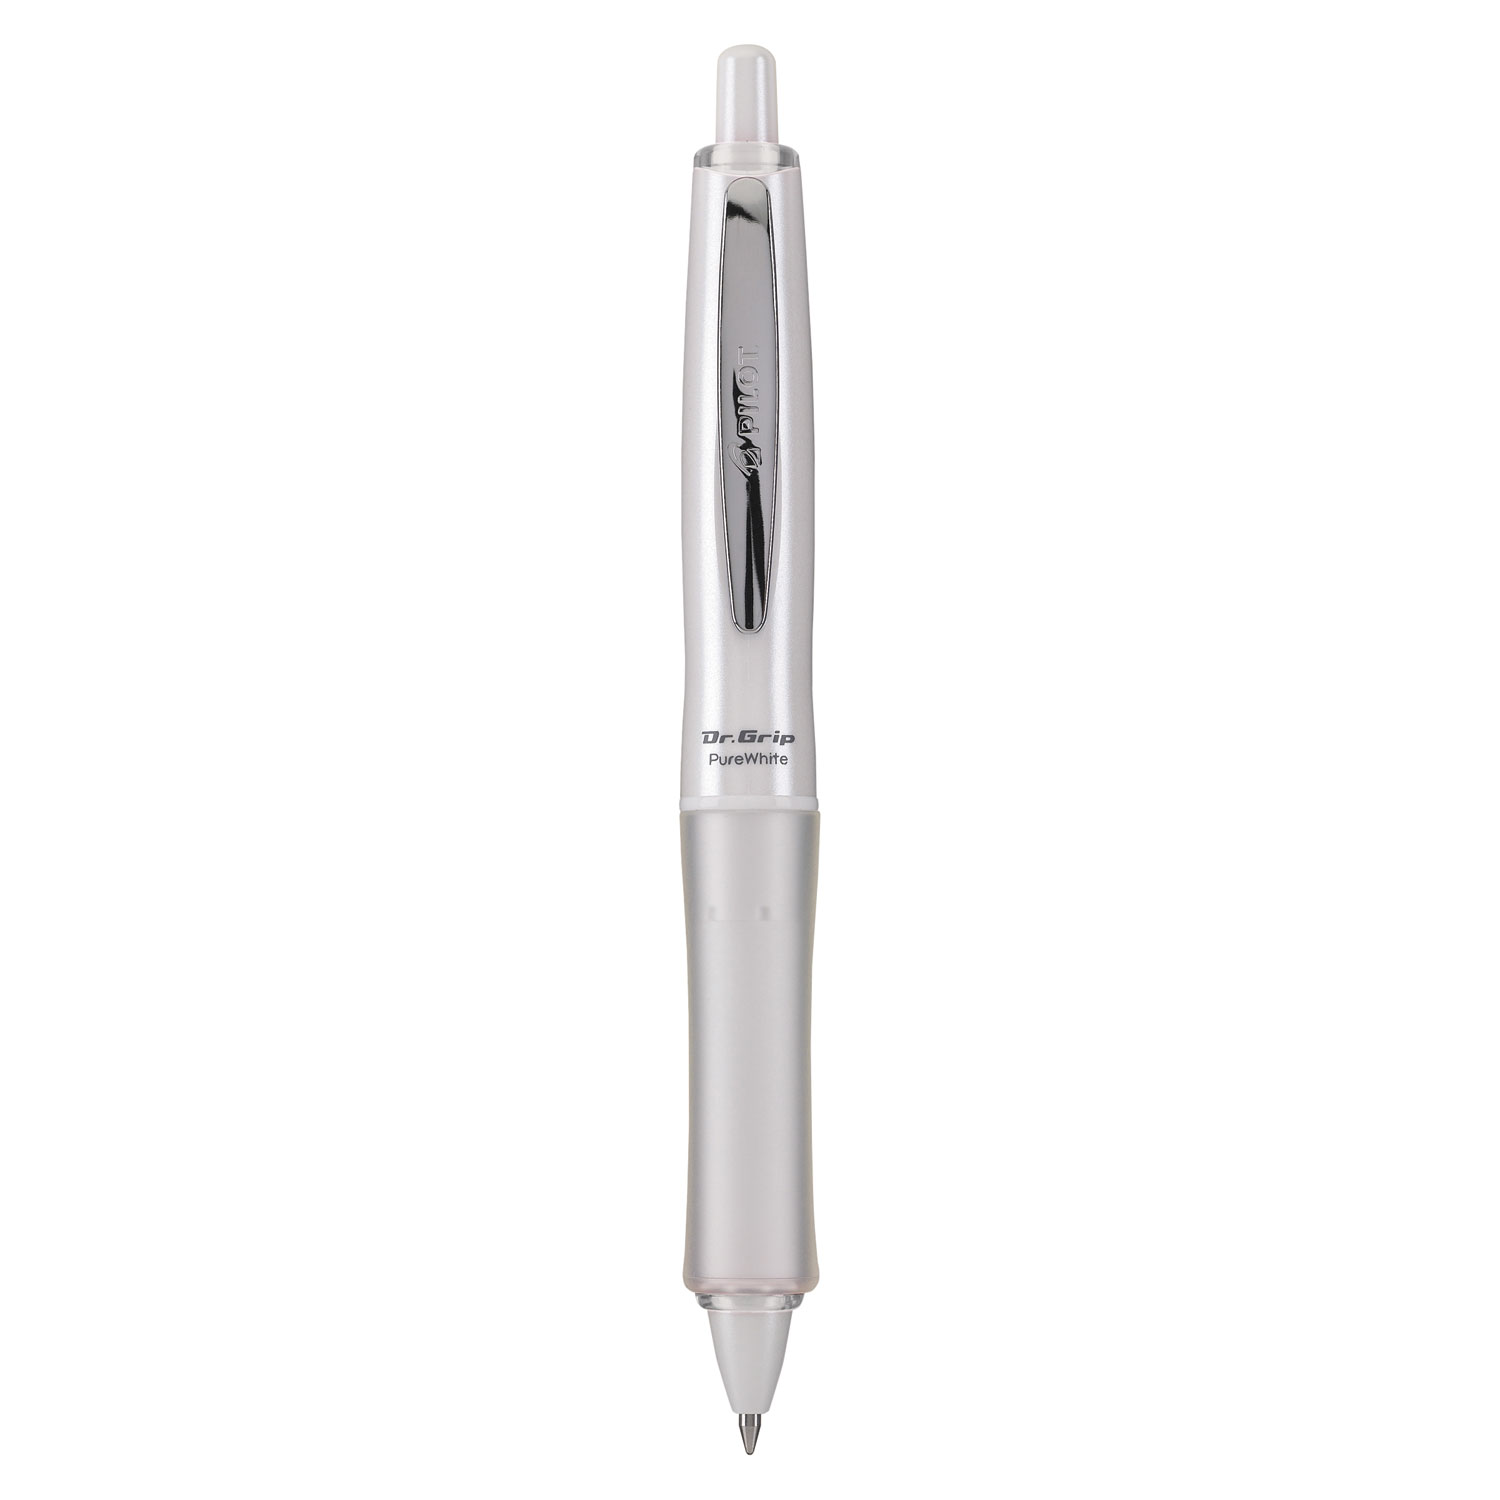  Pilot 36204 Dr. Grip PureWhite Retractable Ballpoint Pen, 1mm, Black Ink, White/Crystal Barrel (PIL36204) 